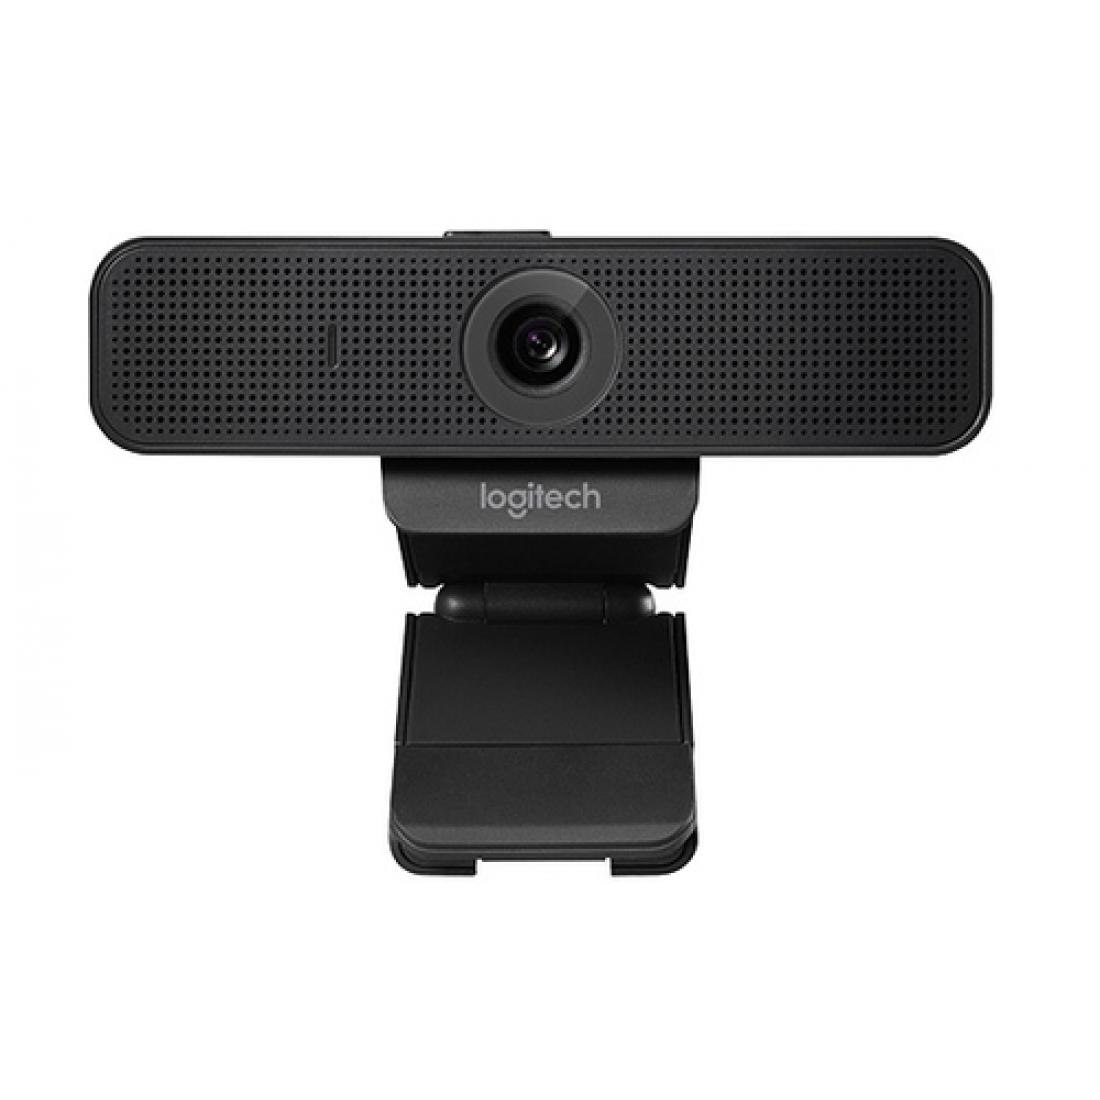 Webcam Logitech C922 Pro Stream, Full HD 1080p USB, streaming alta calidad  Twitch y